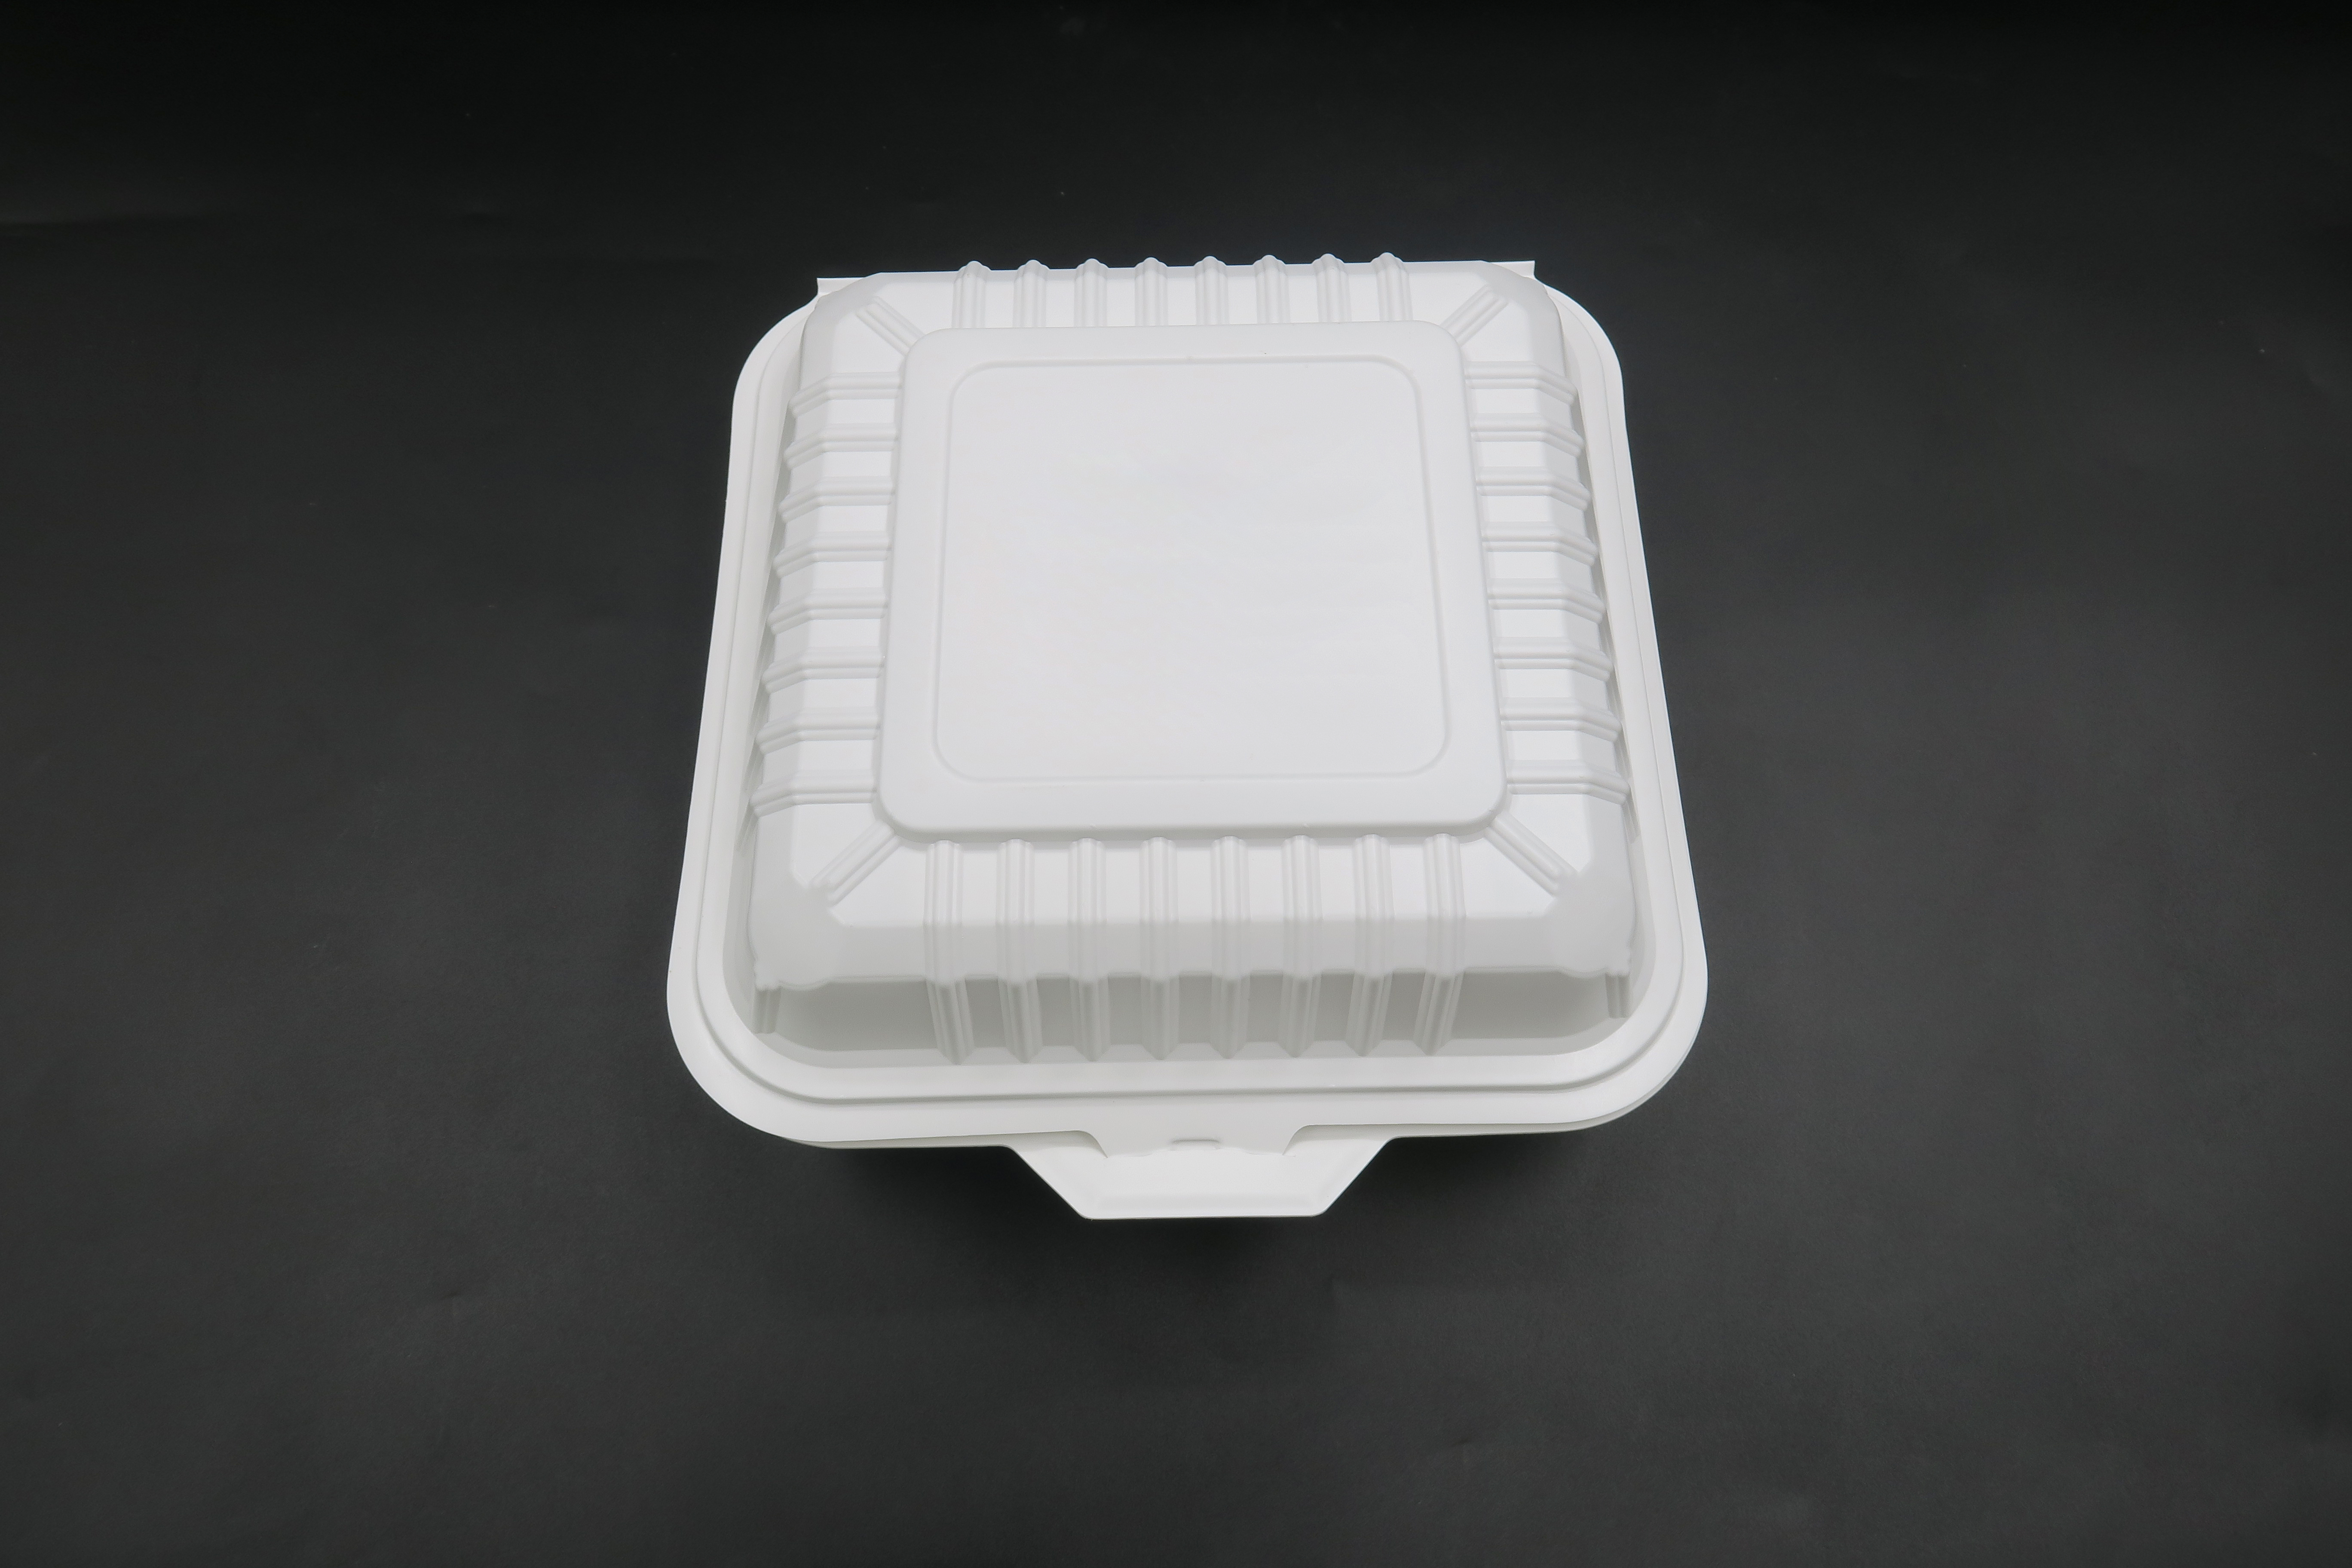 Caja para llevar del almuerzo del envase de PP termoformado disponible de la microonda